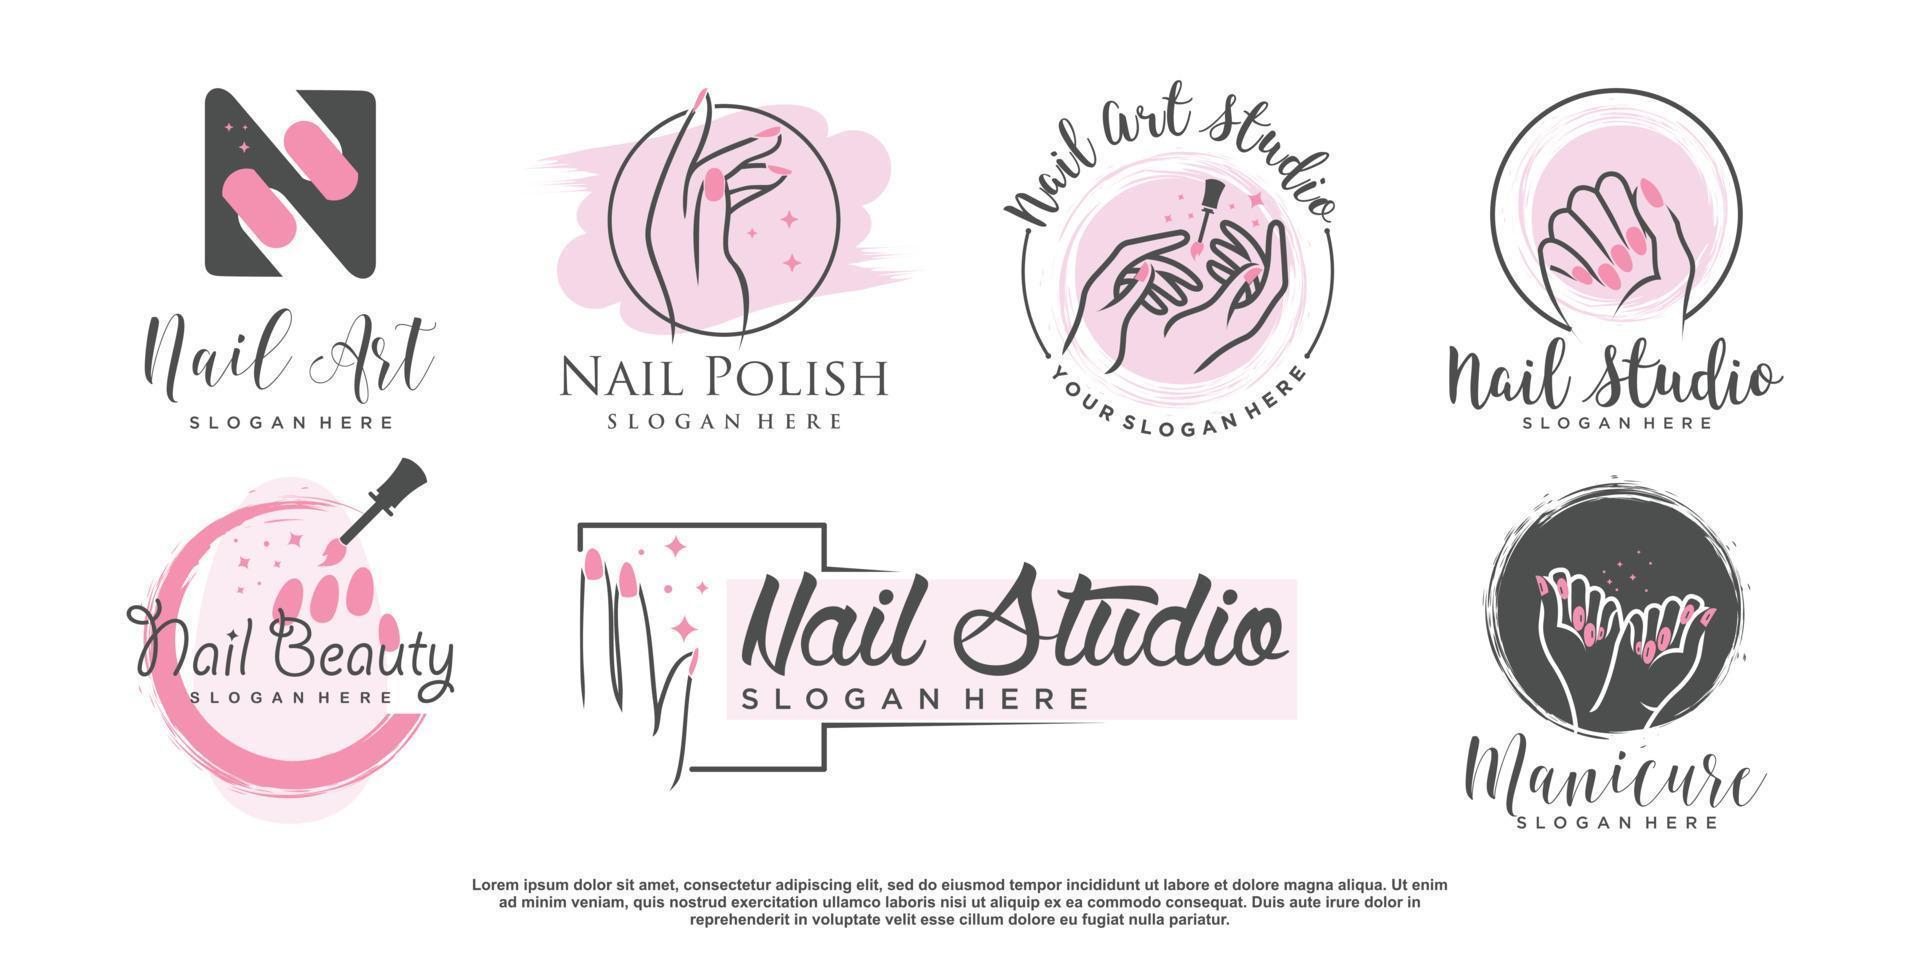 diseño de logotipo de uñas para vector premium de belleza y moda